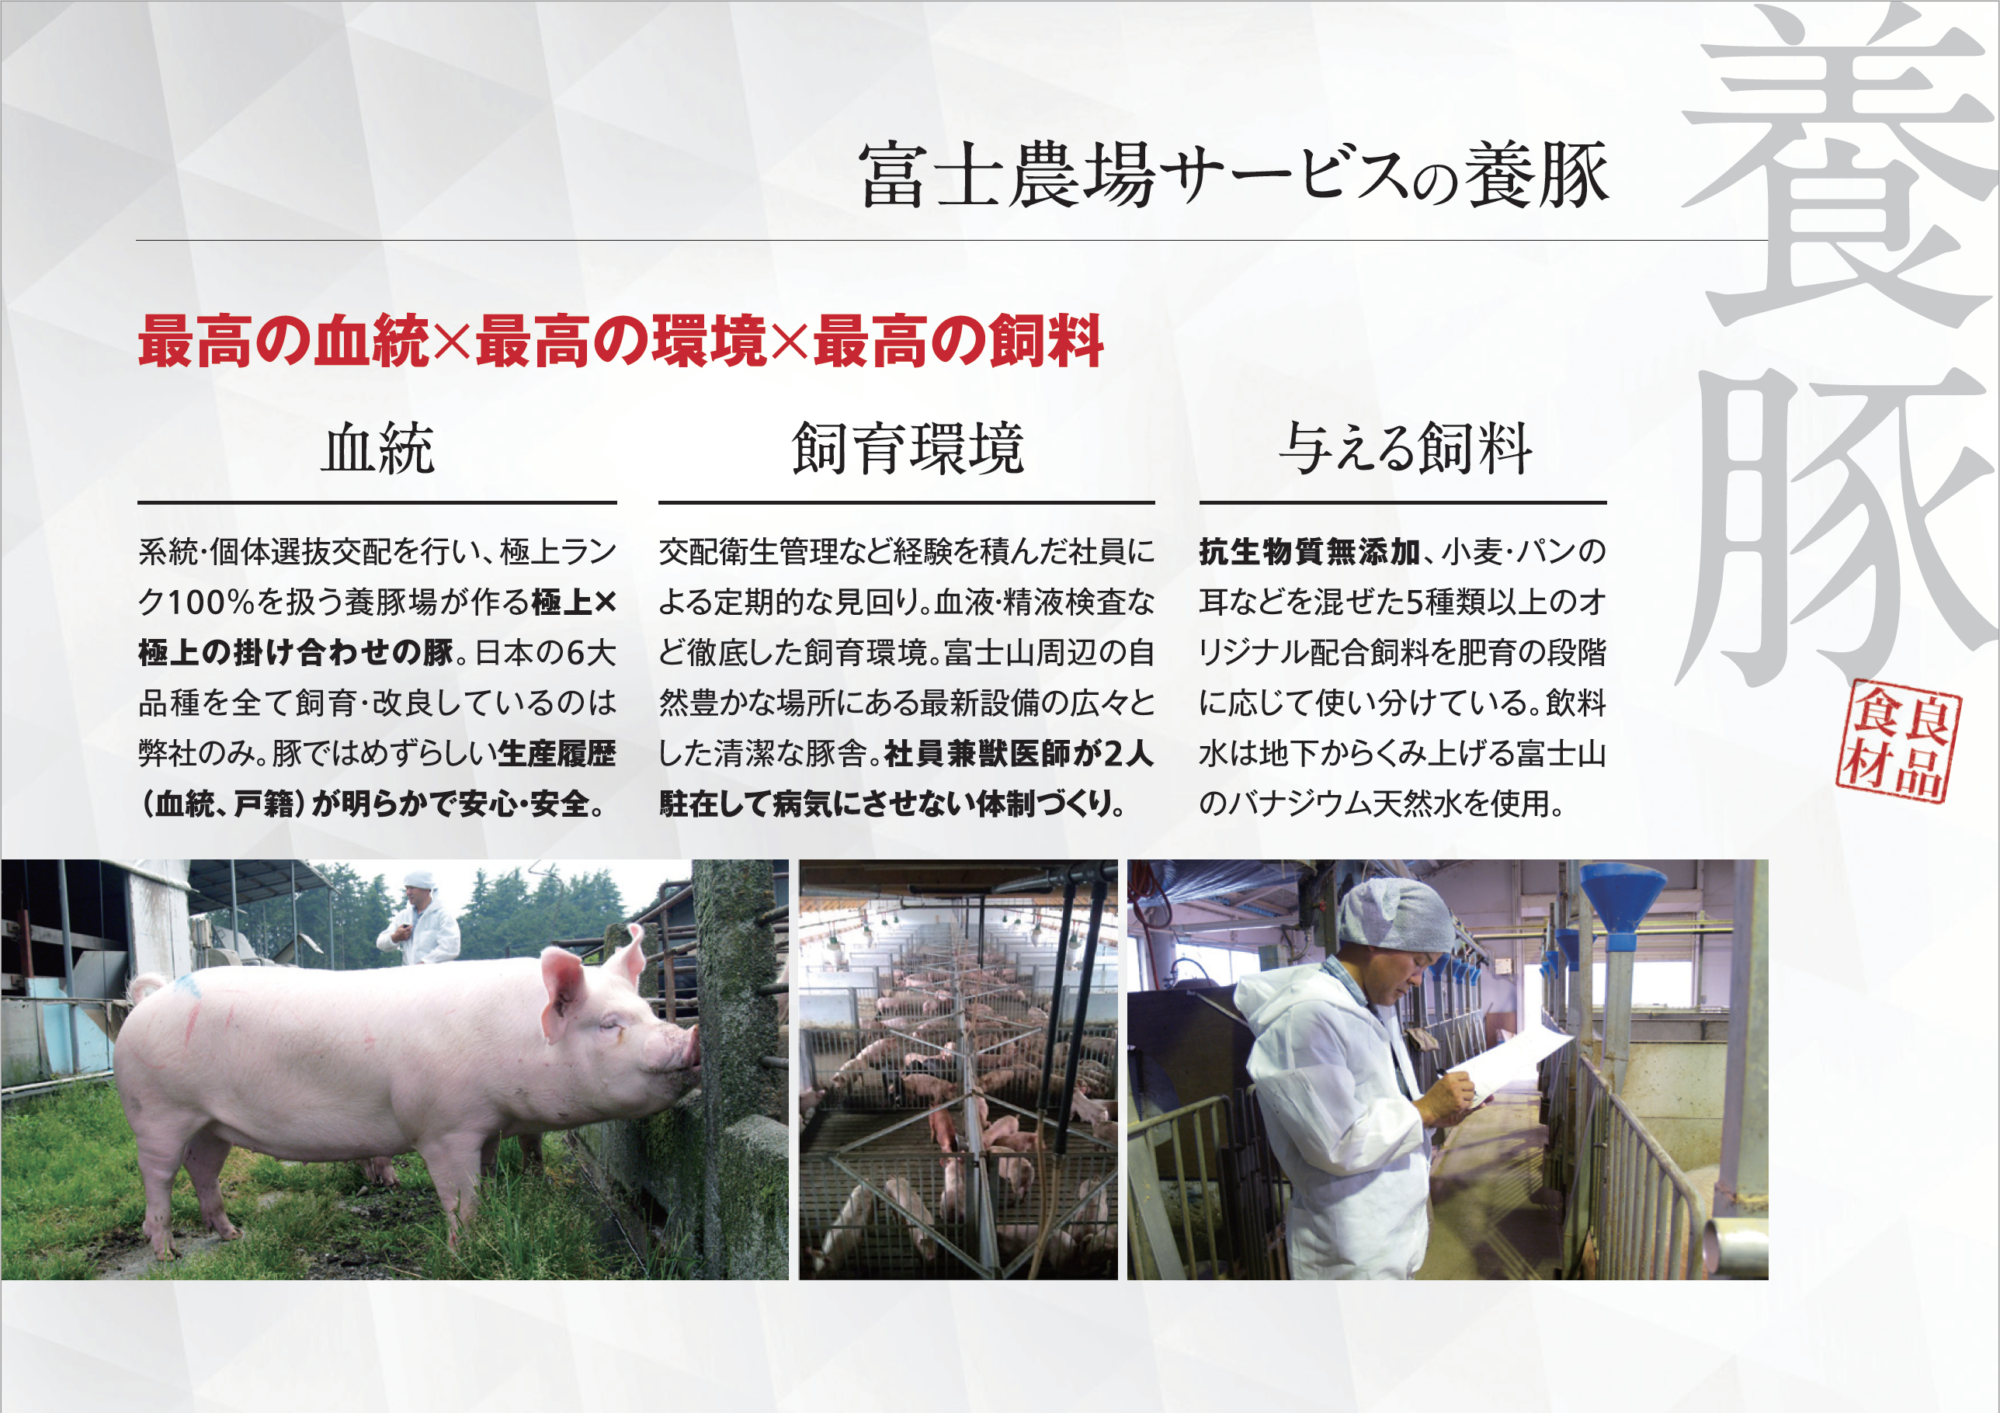 富士幻豚の味について 富士幻豚 ふじげんとん 公式webサイト